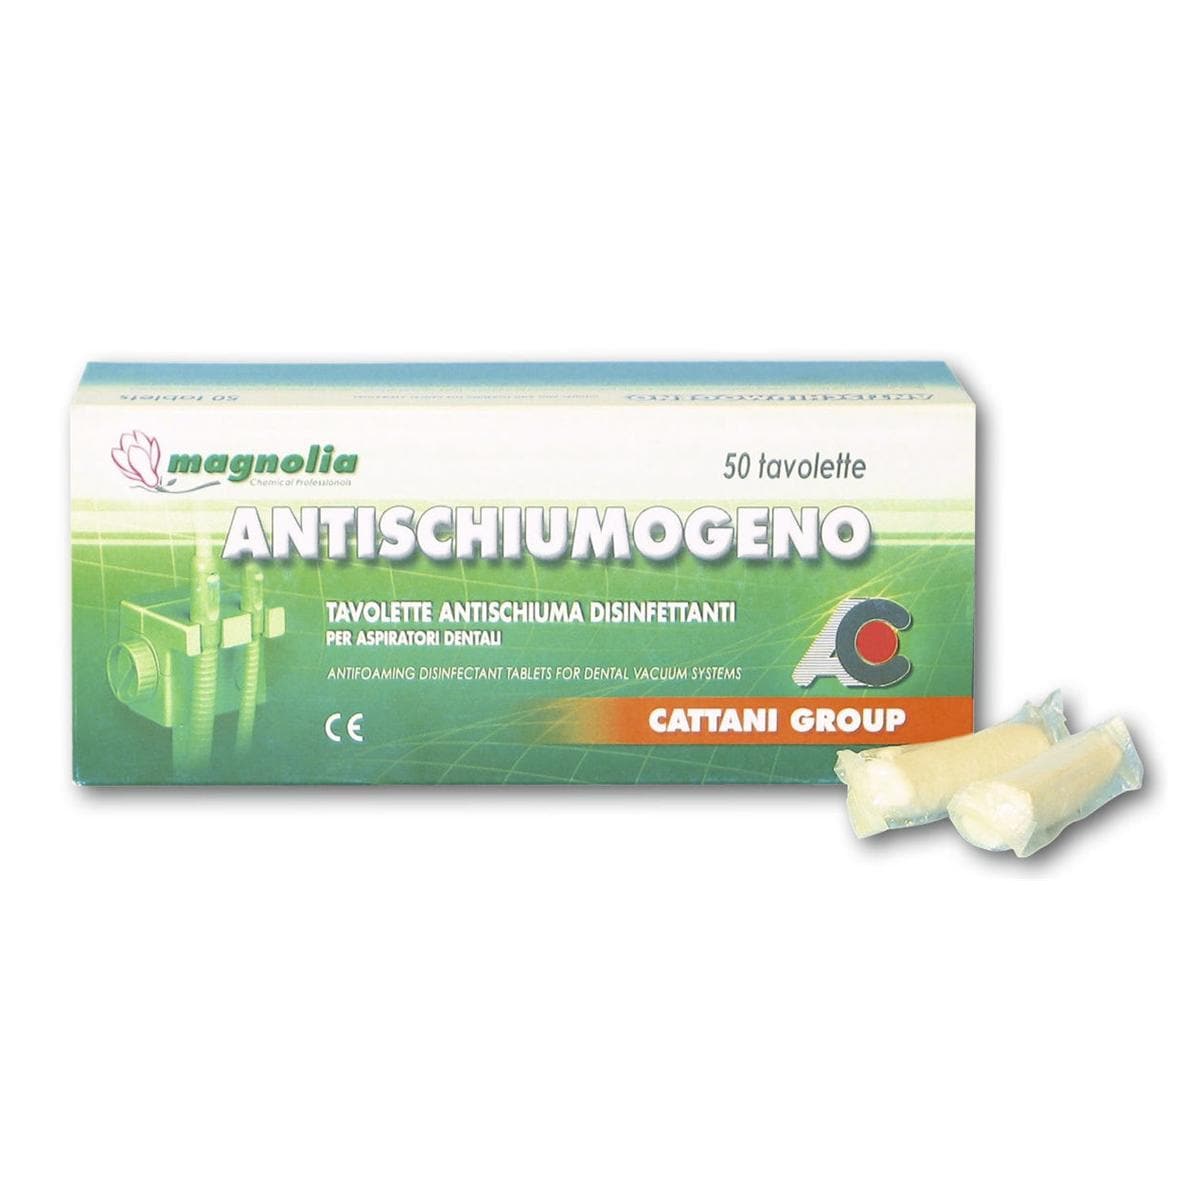 Antischiumogeno - Anti-Schaumtabletten - Packung 50 Stück